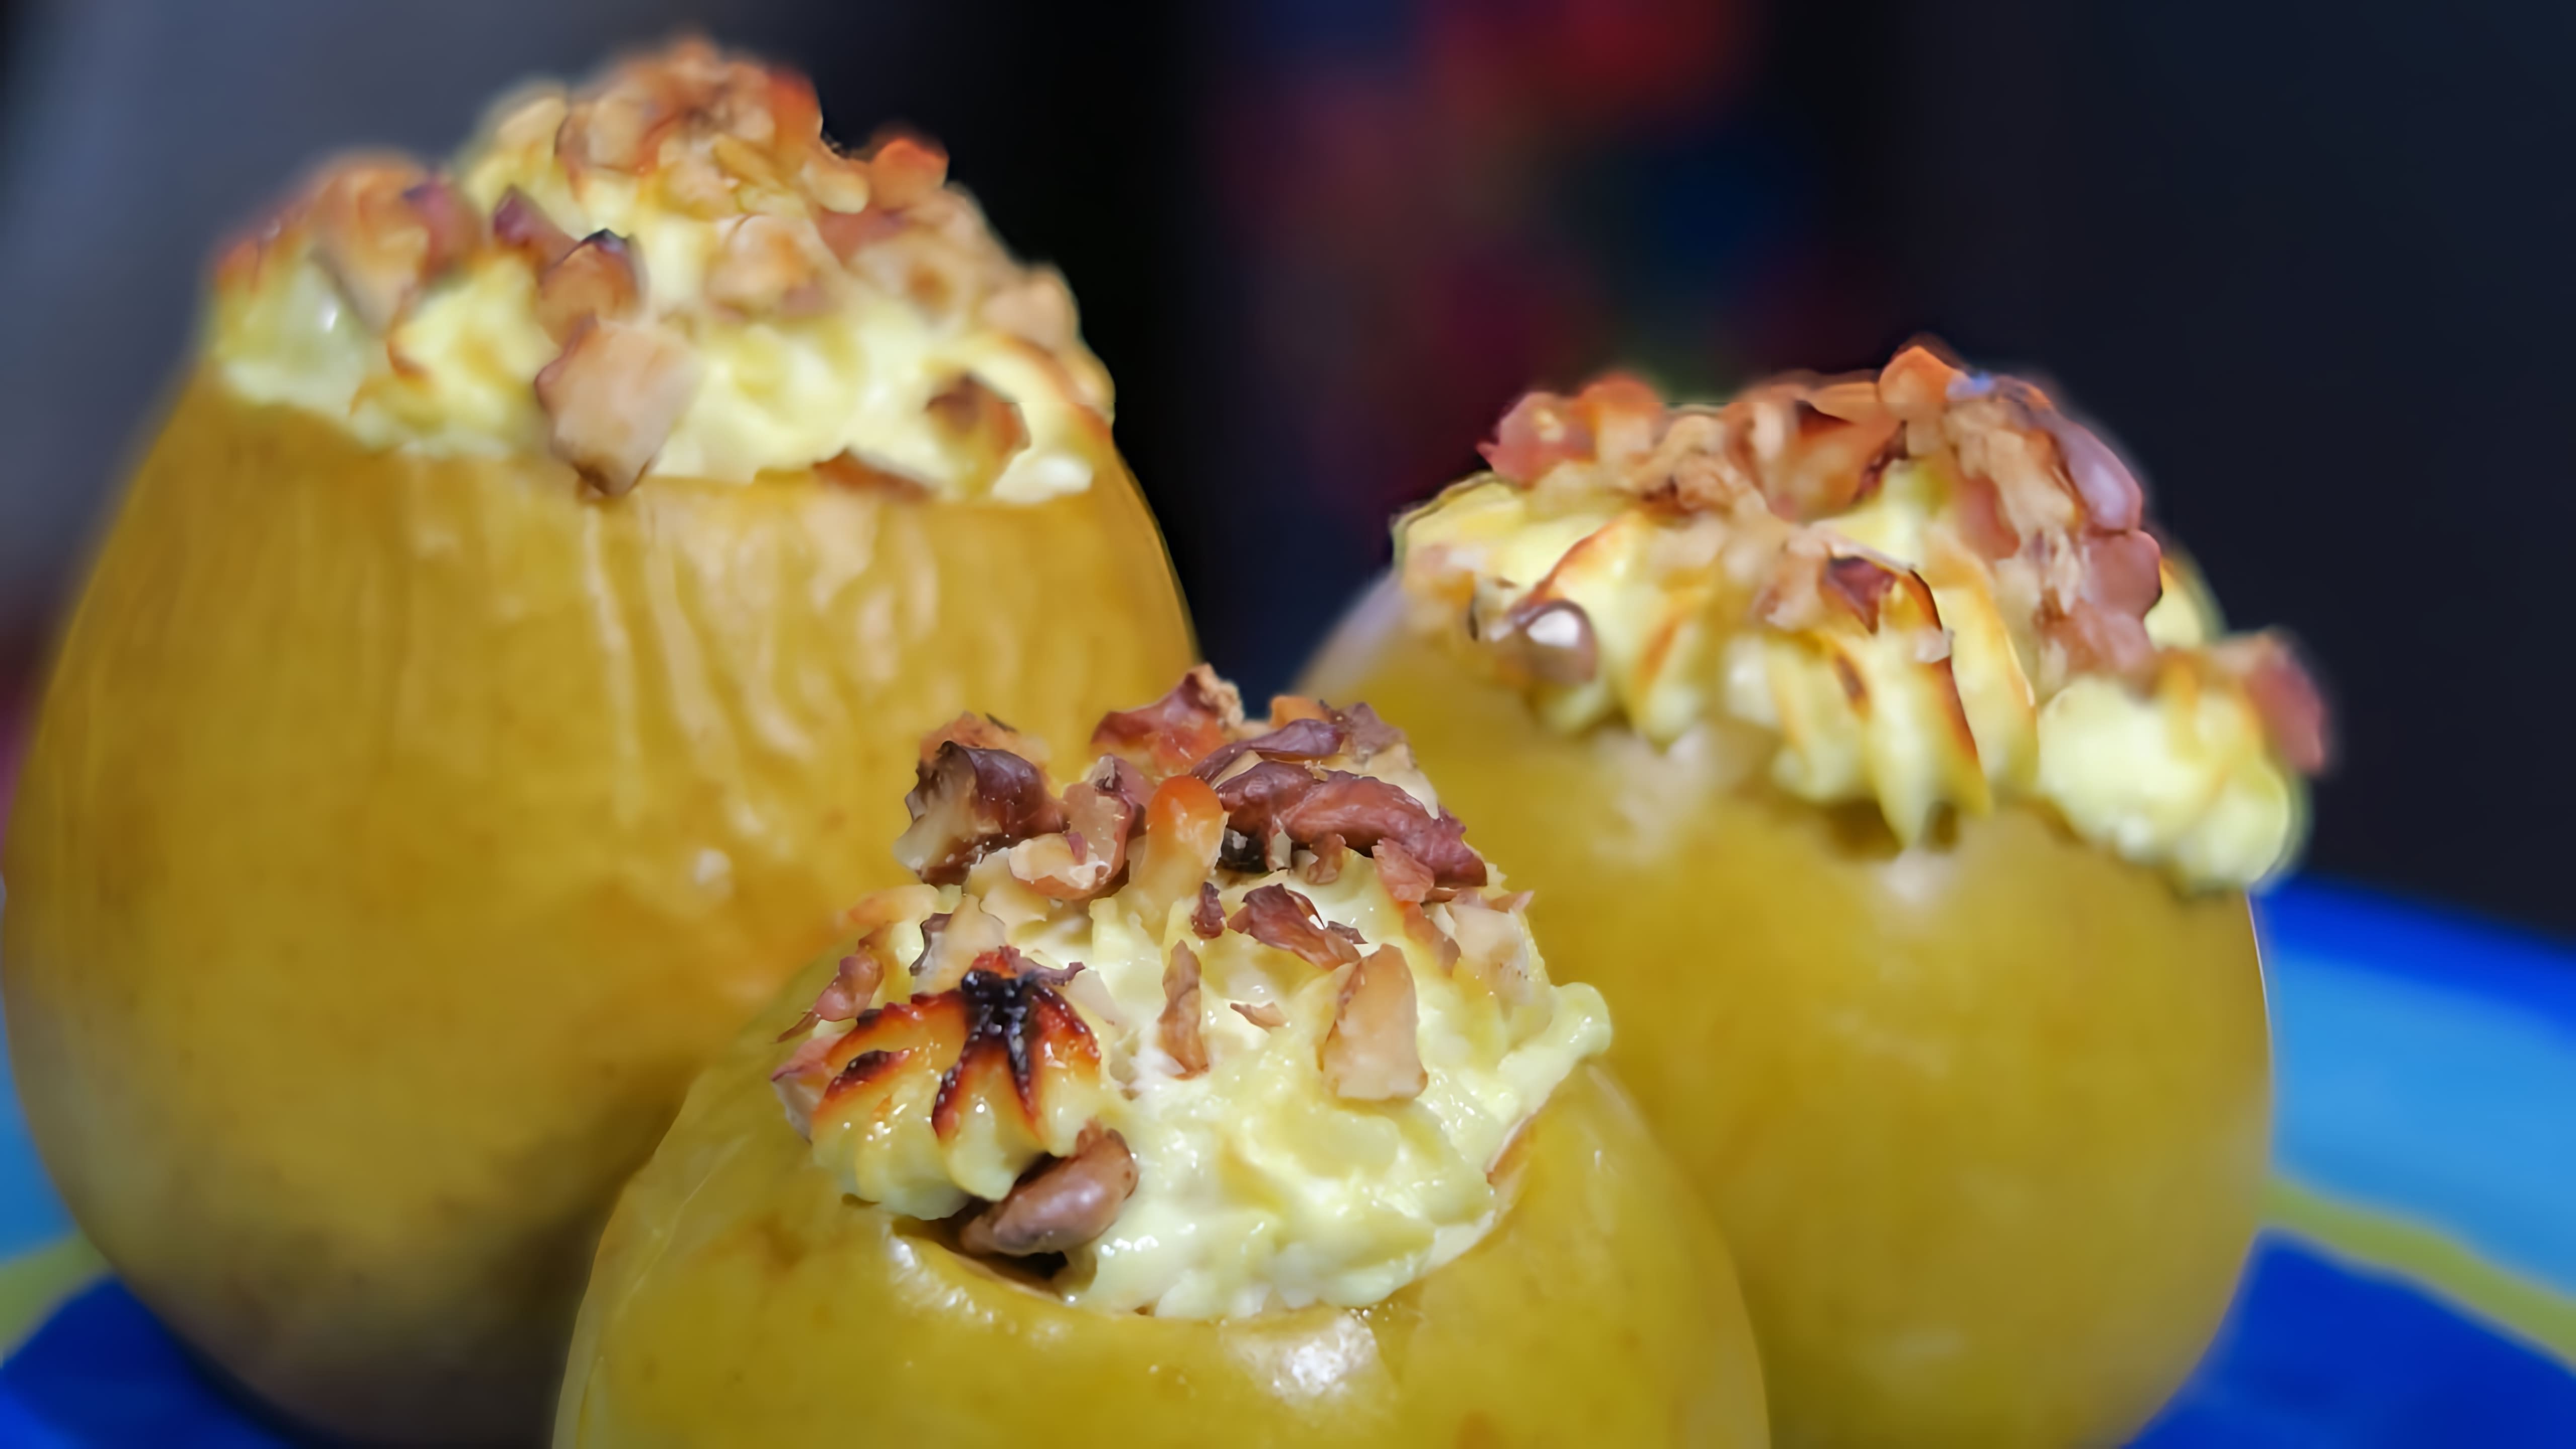 В этом видео демонстрируется рецепт приготовления печеных яблок с творогом, изюмом и орехами